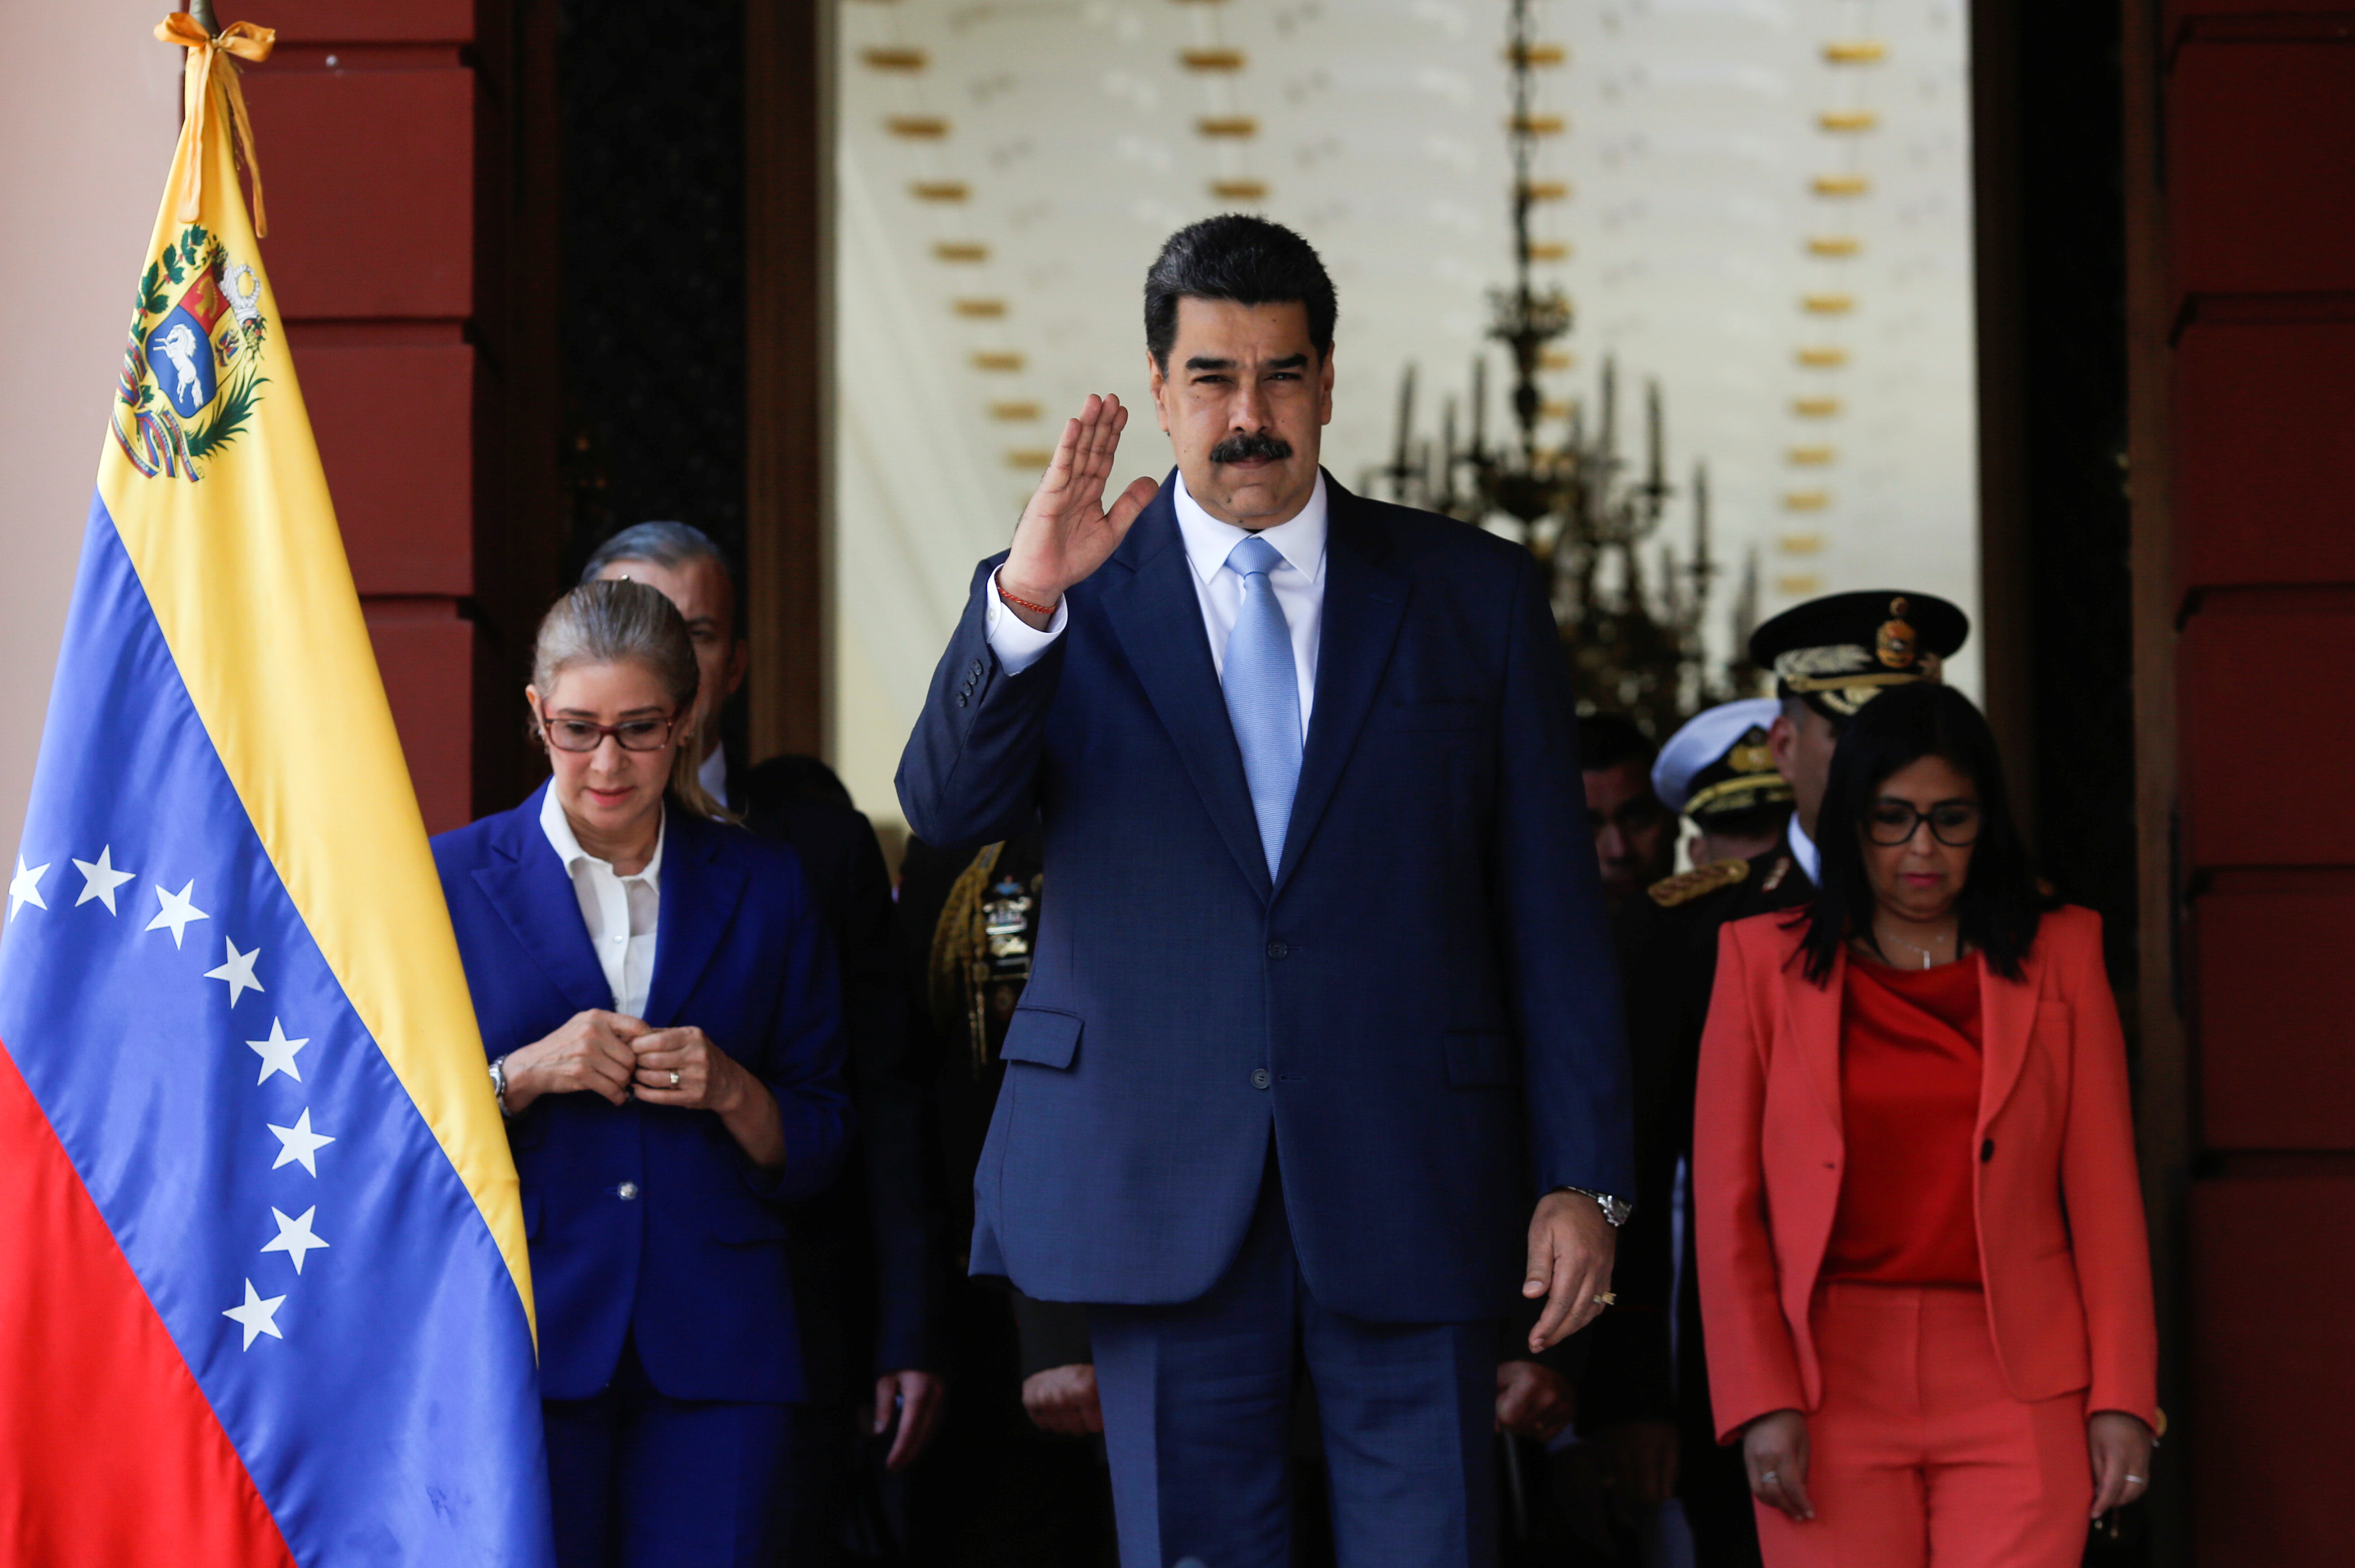 El dictador Maduro inició una purga de funcionarios chavistas (REUTERS/Manaure Quintero)